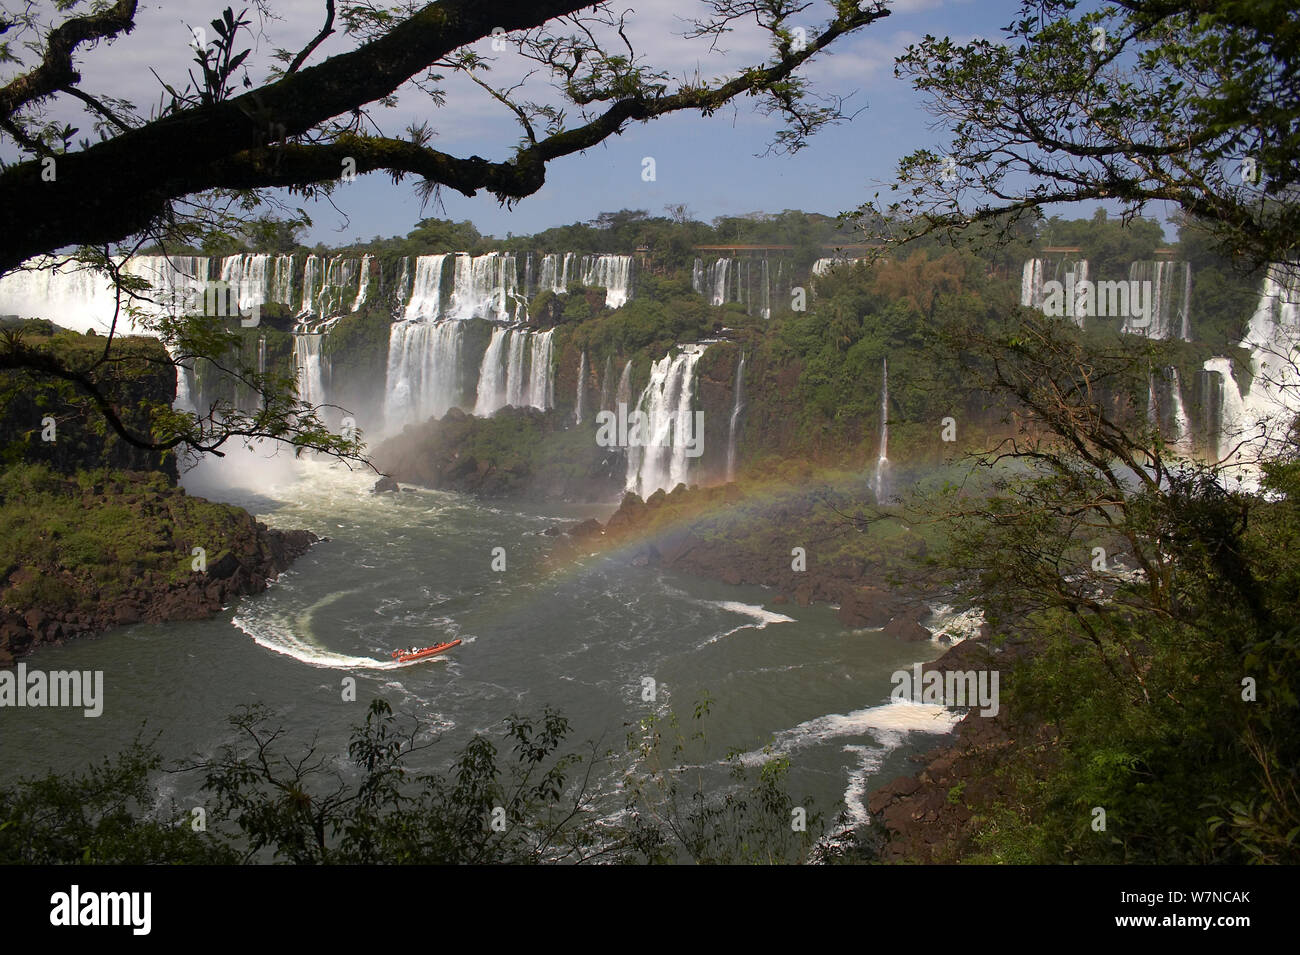 Iguazu waterfalls, Iguacu National Park, Argentina. UNESCO World Heritage Site, October 2008 Stock Photo